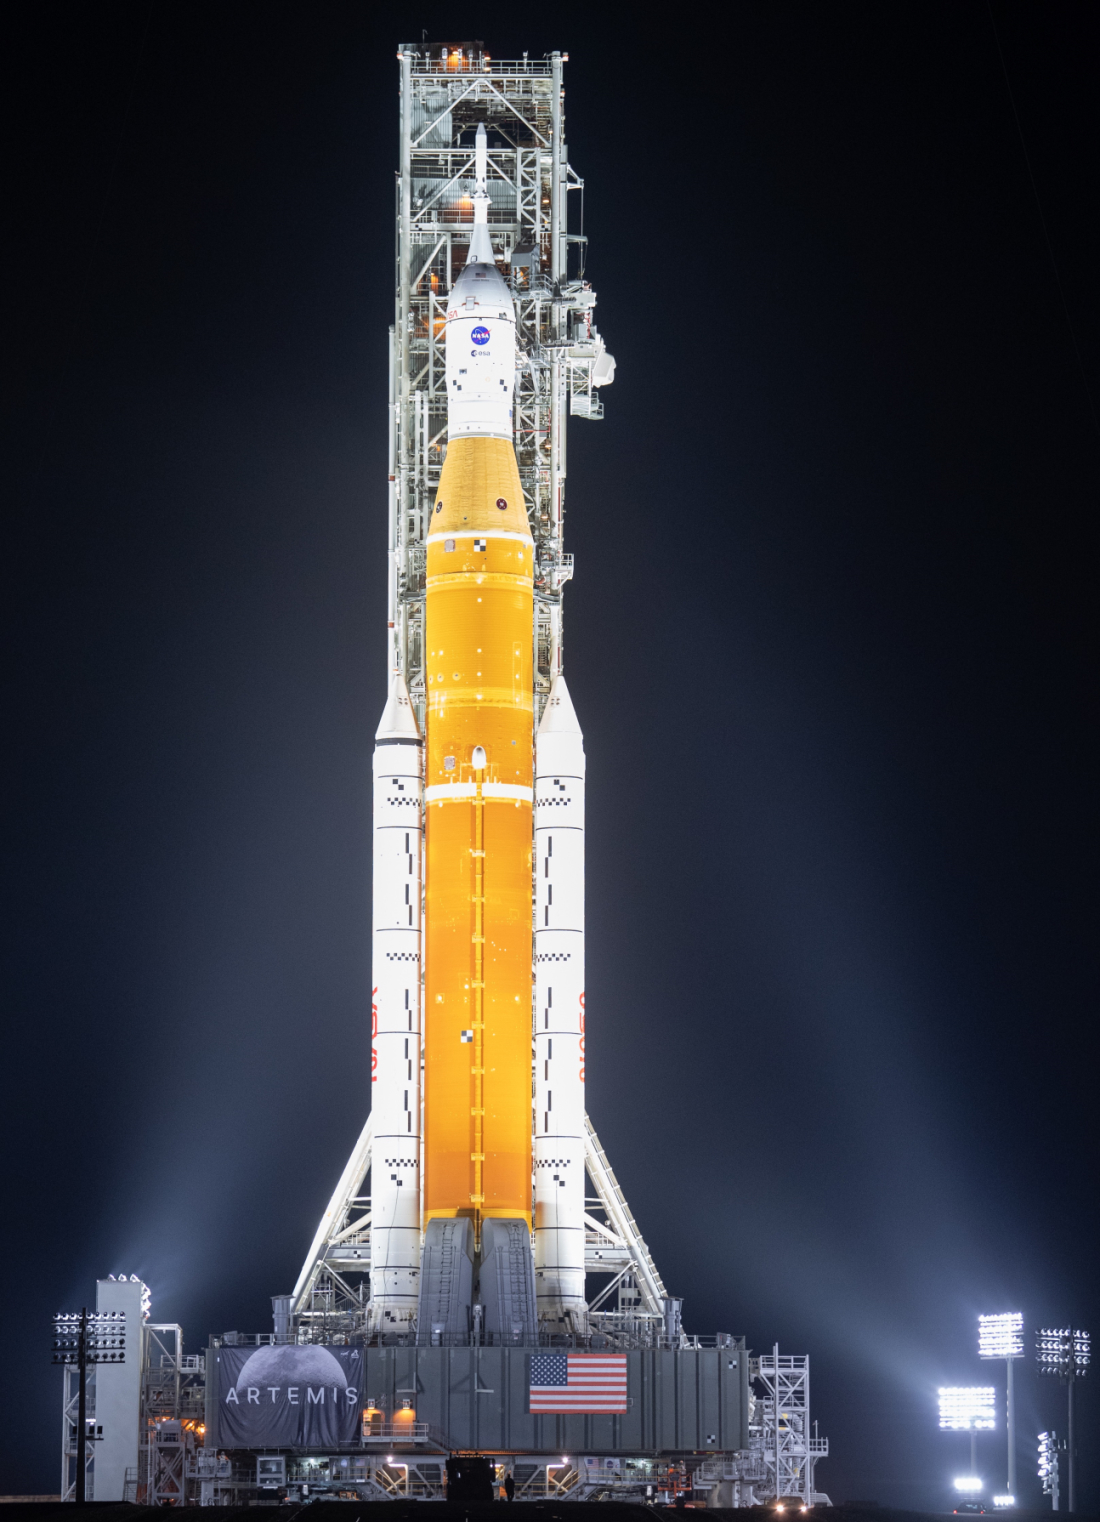 NASA-ina raketa Space Launch System (SLS) sa svemirskom letjelicom Orion na vrhu vidljiva je na ovoj slici osvijetljena reflektorima na platformi Launch Complexu 39B u petak, 18. ožujka 2022. Prije NASA-inog testa leta Artemis I, potpuno složena i integrirana SLS raketa i svemirska letjelica Orion proći će 'mokru probu' u Launch Complexu 39B kako bi se provjerili sustavi i uvježbale procedure odbrojavanja za prvo lansiranje (©NASA).